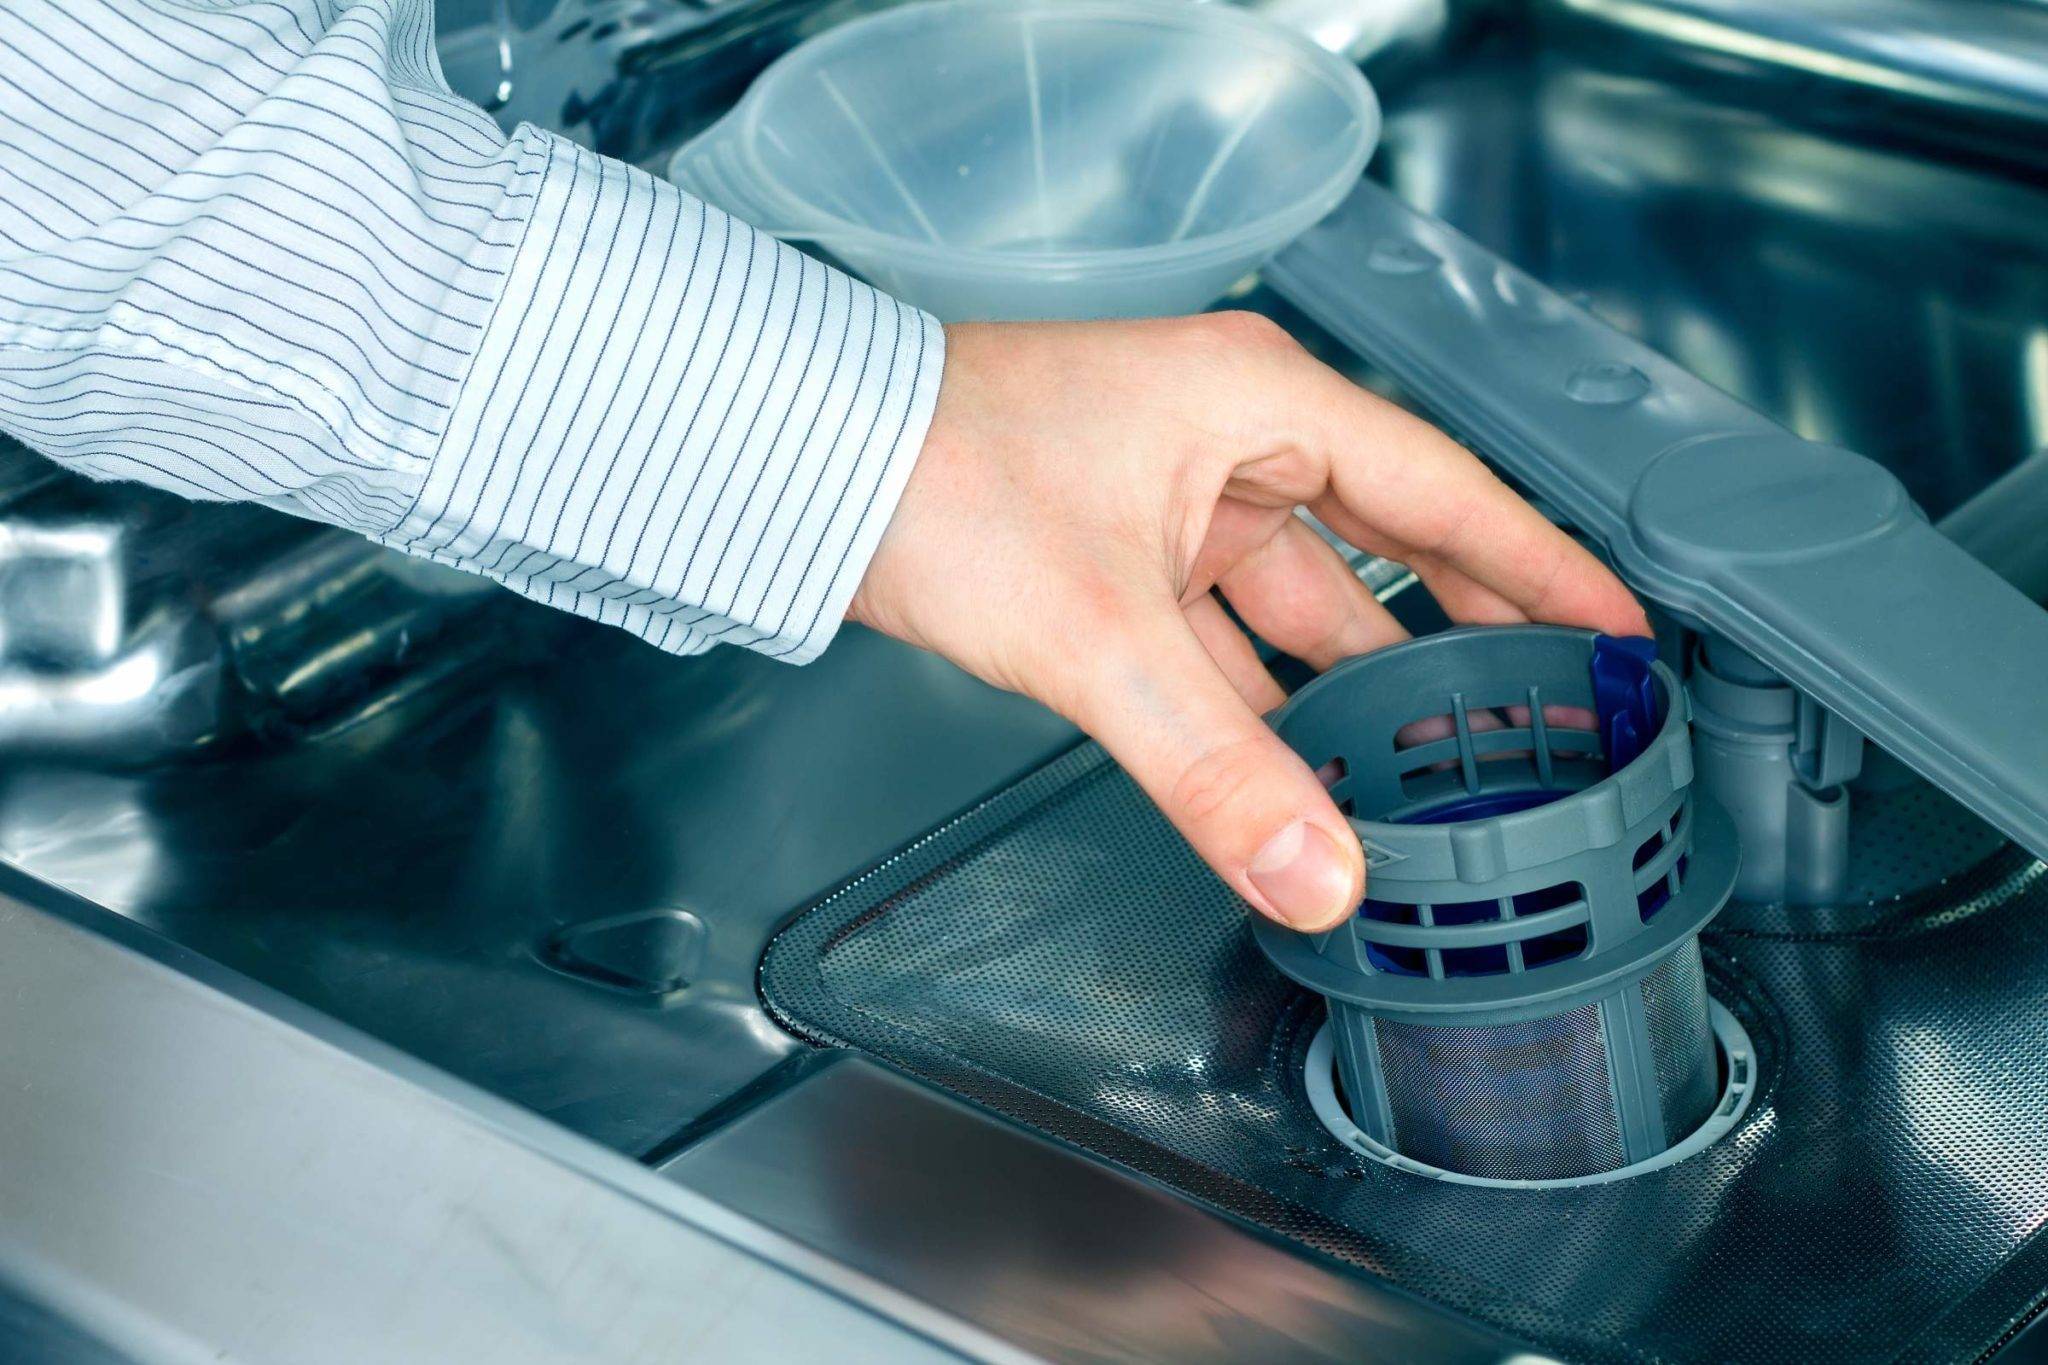 Рейтинг лучших средств для чистки посудомоечных машин в 2022 году